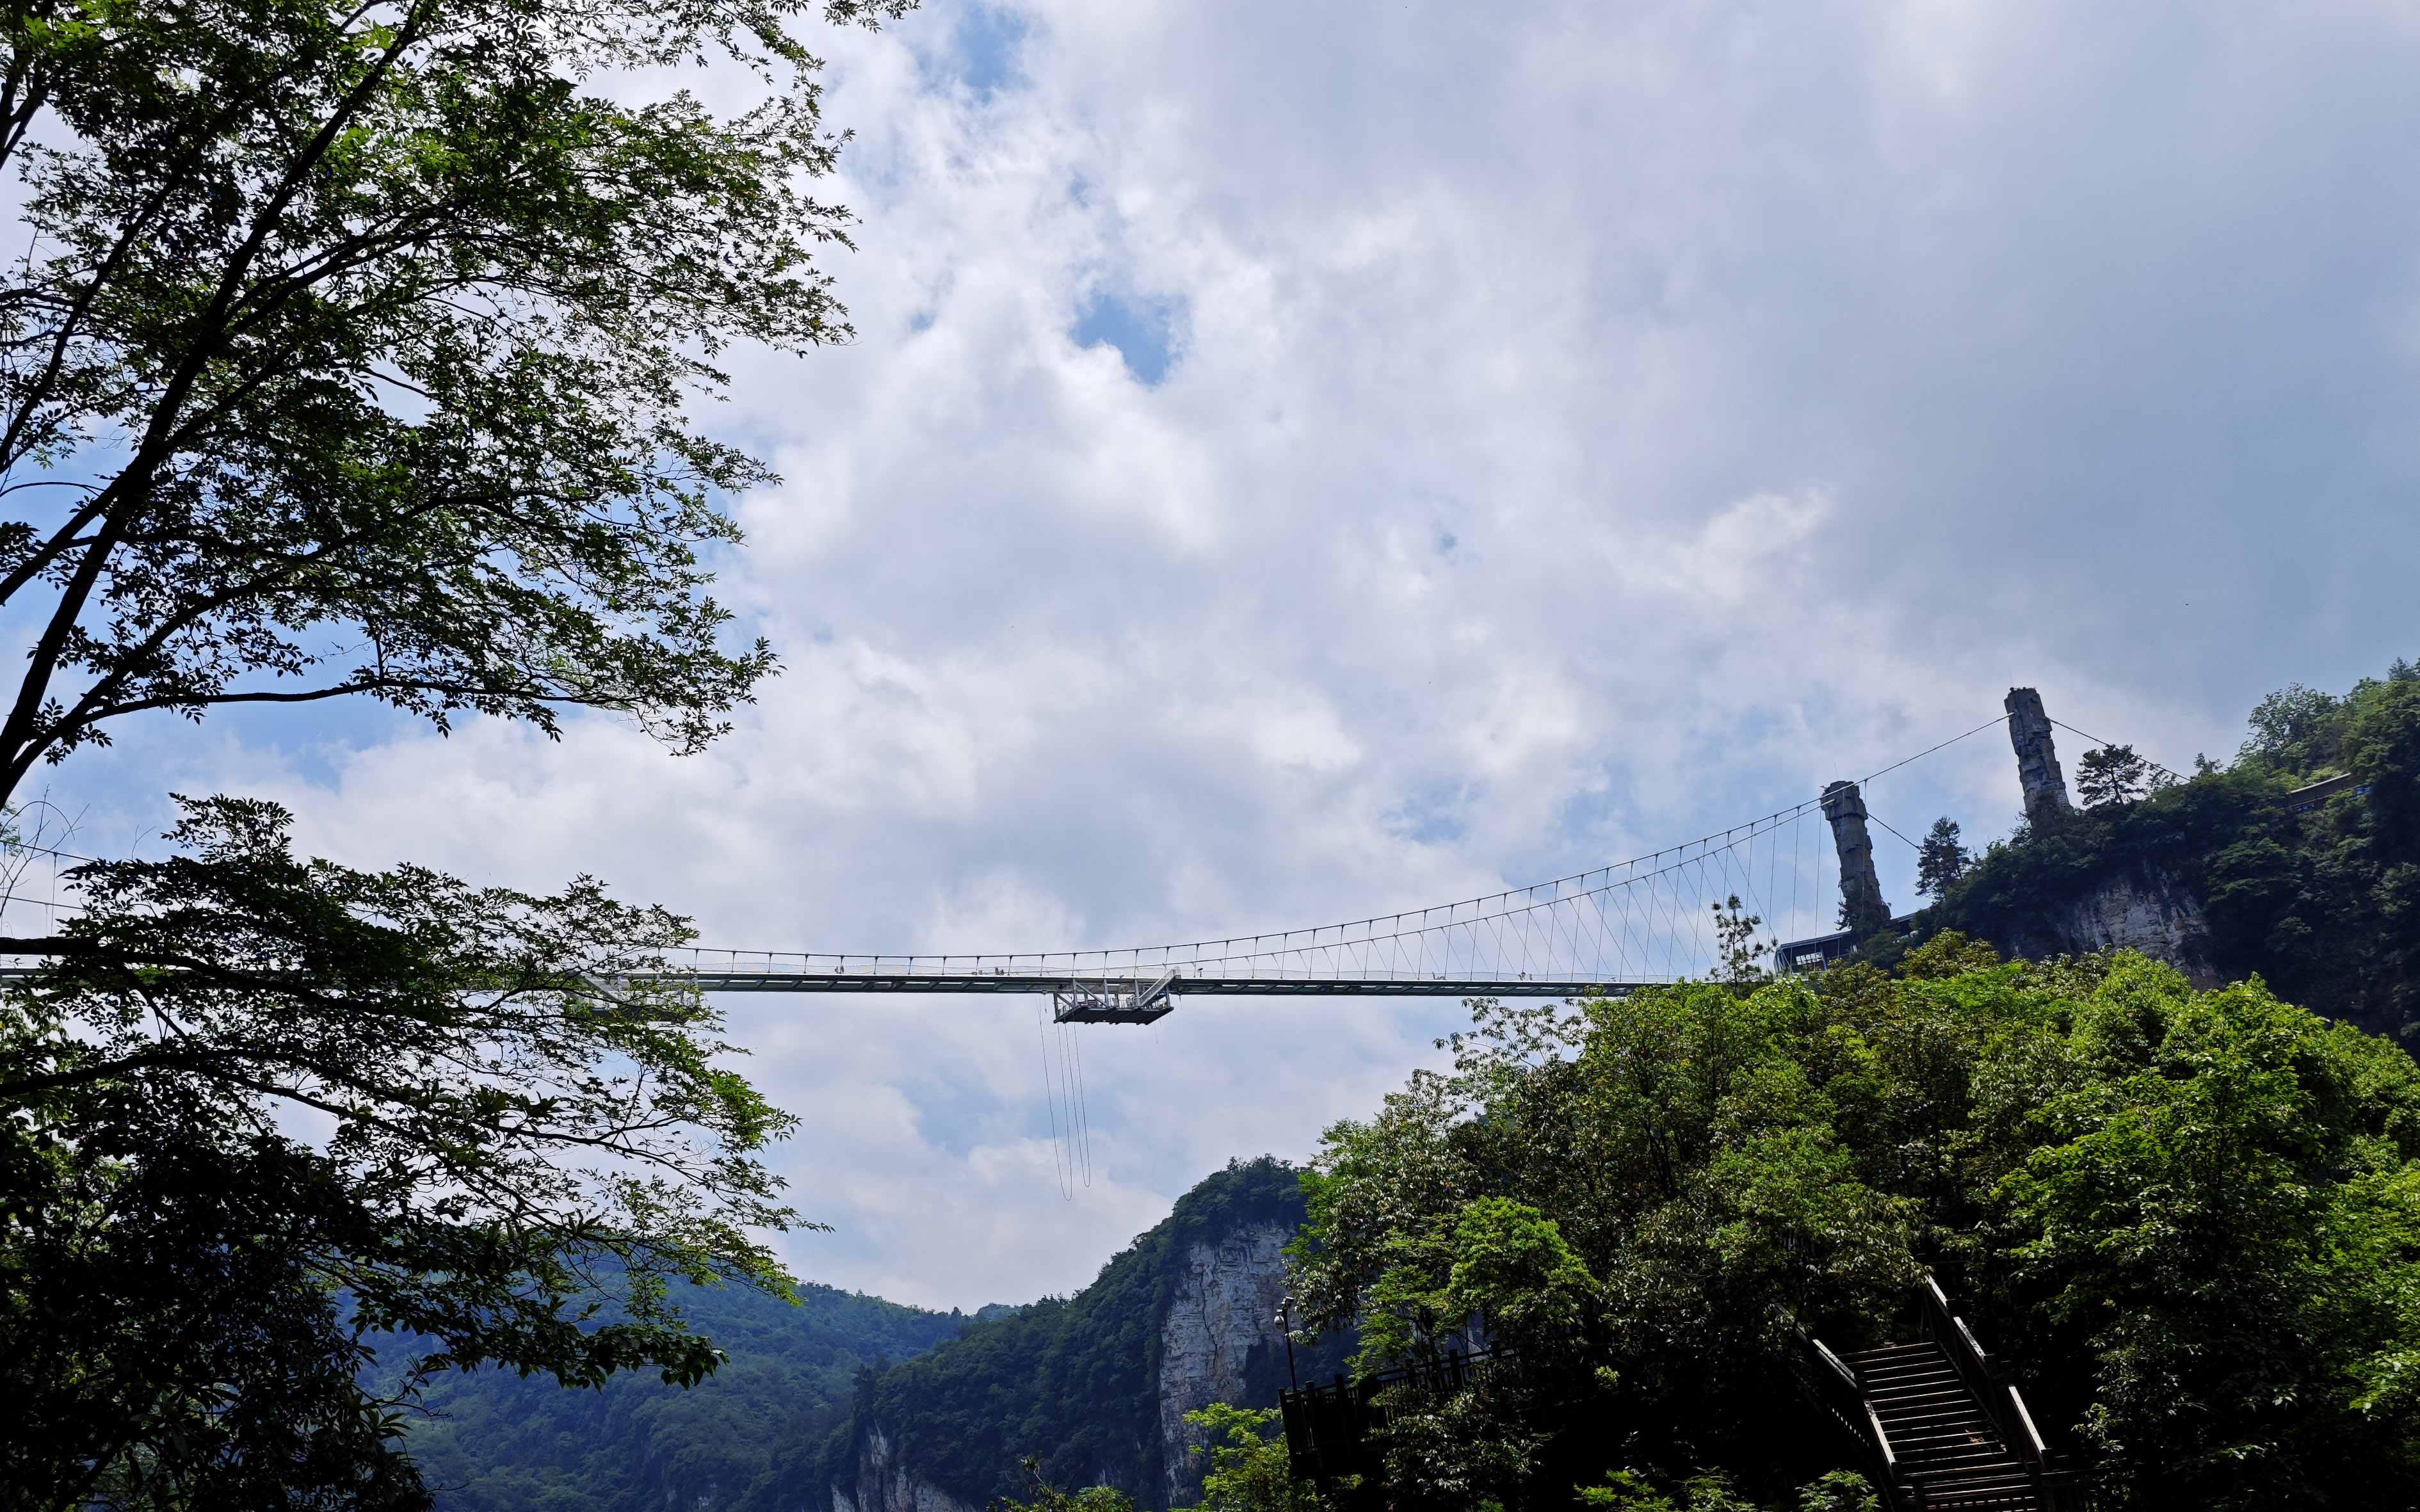 The glass bridge spans the canyon between two mountain cliffs at the Zhangjiajie National Forest Park, Zhangjiajie, Hunan Province. /CNSPHOTO